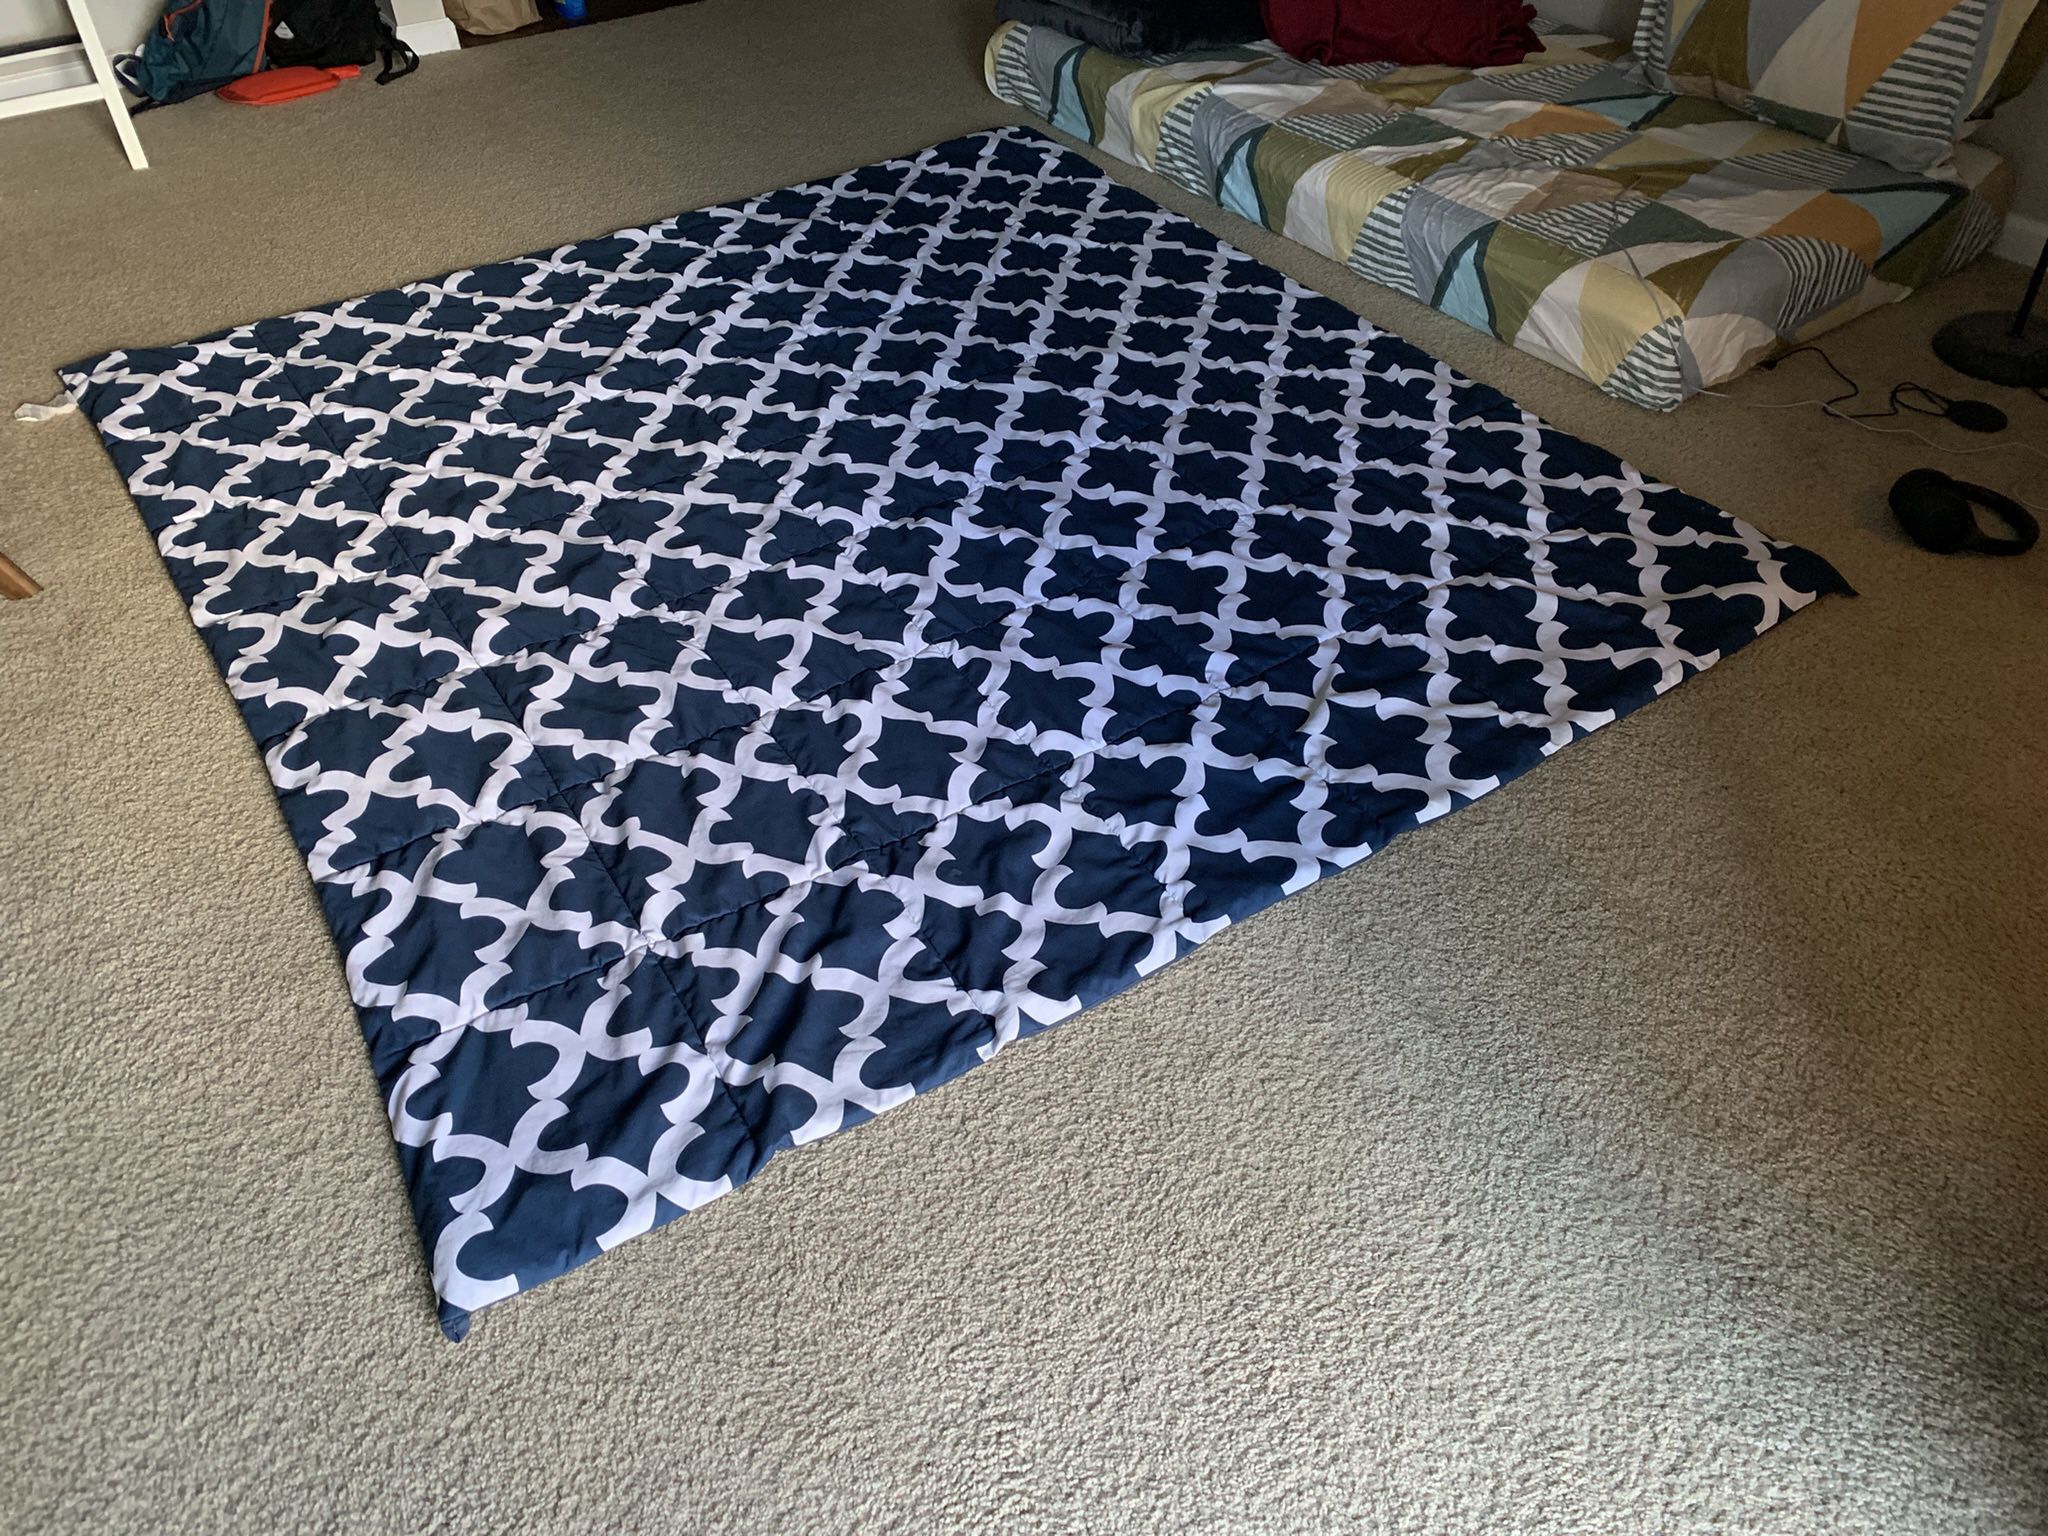 Throw Blanket/Comforter - Full Size 